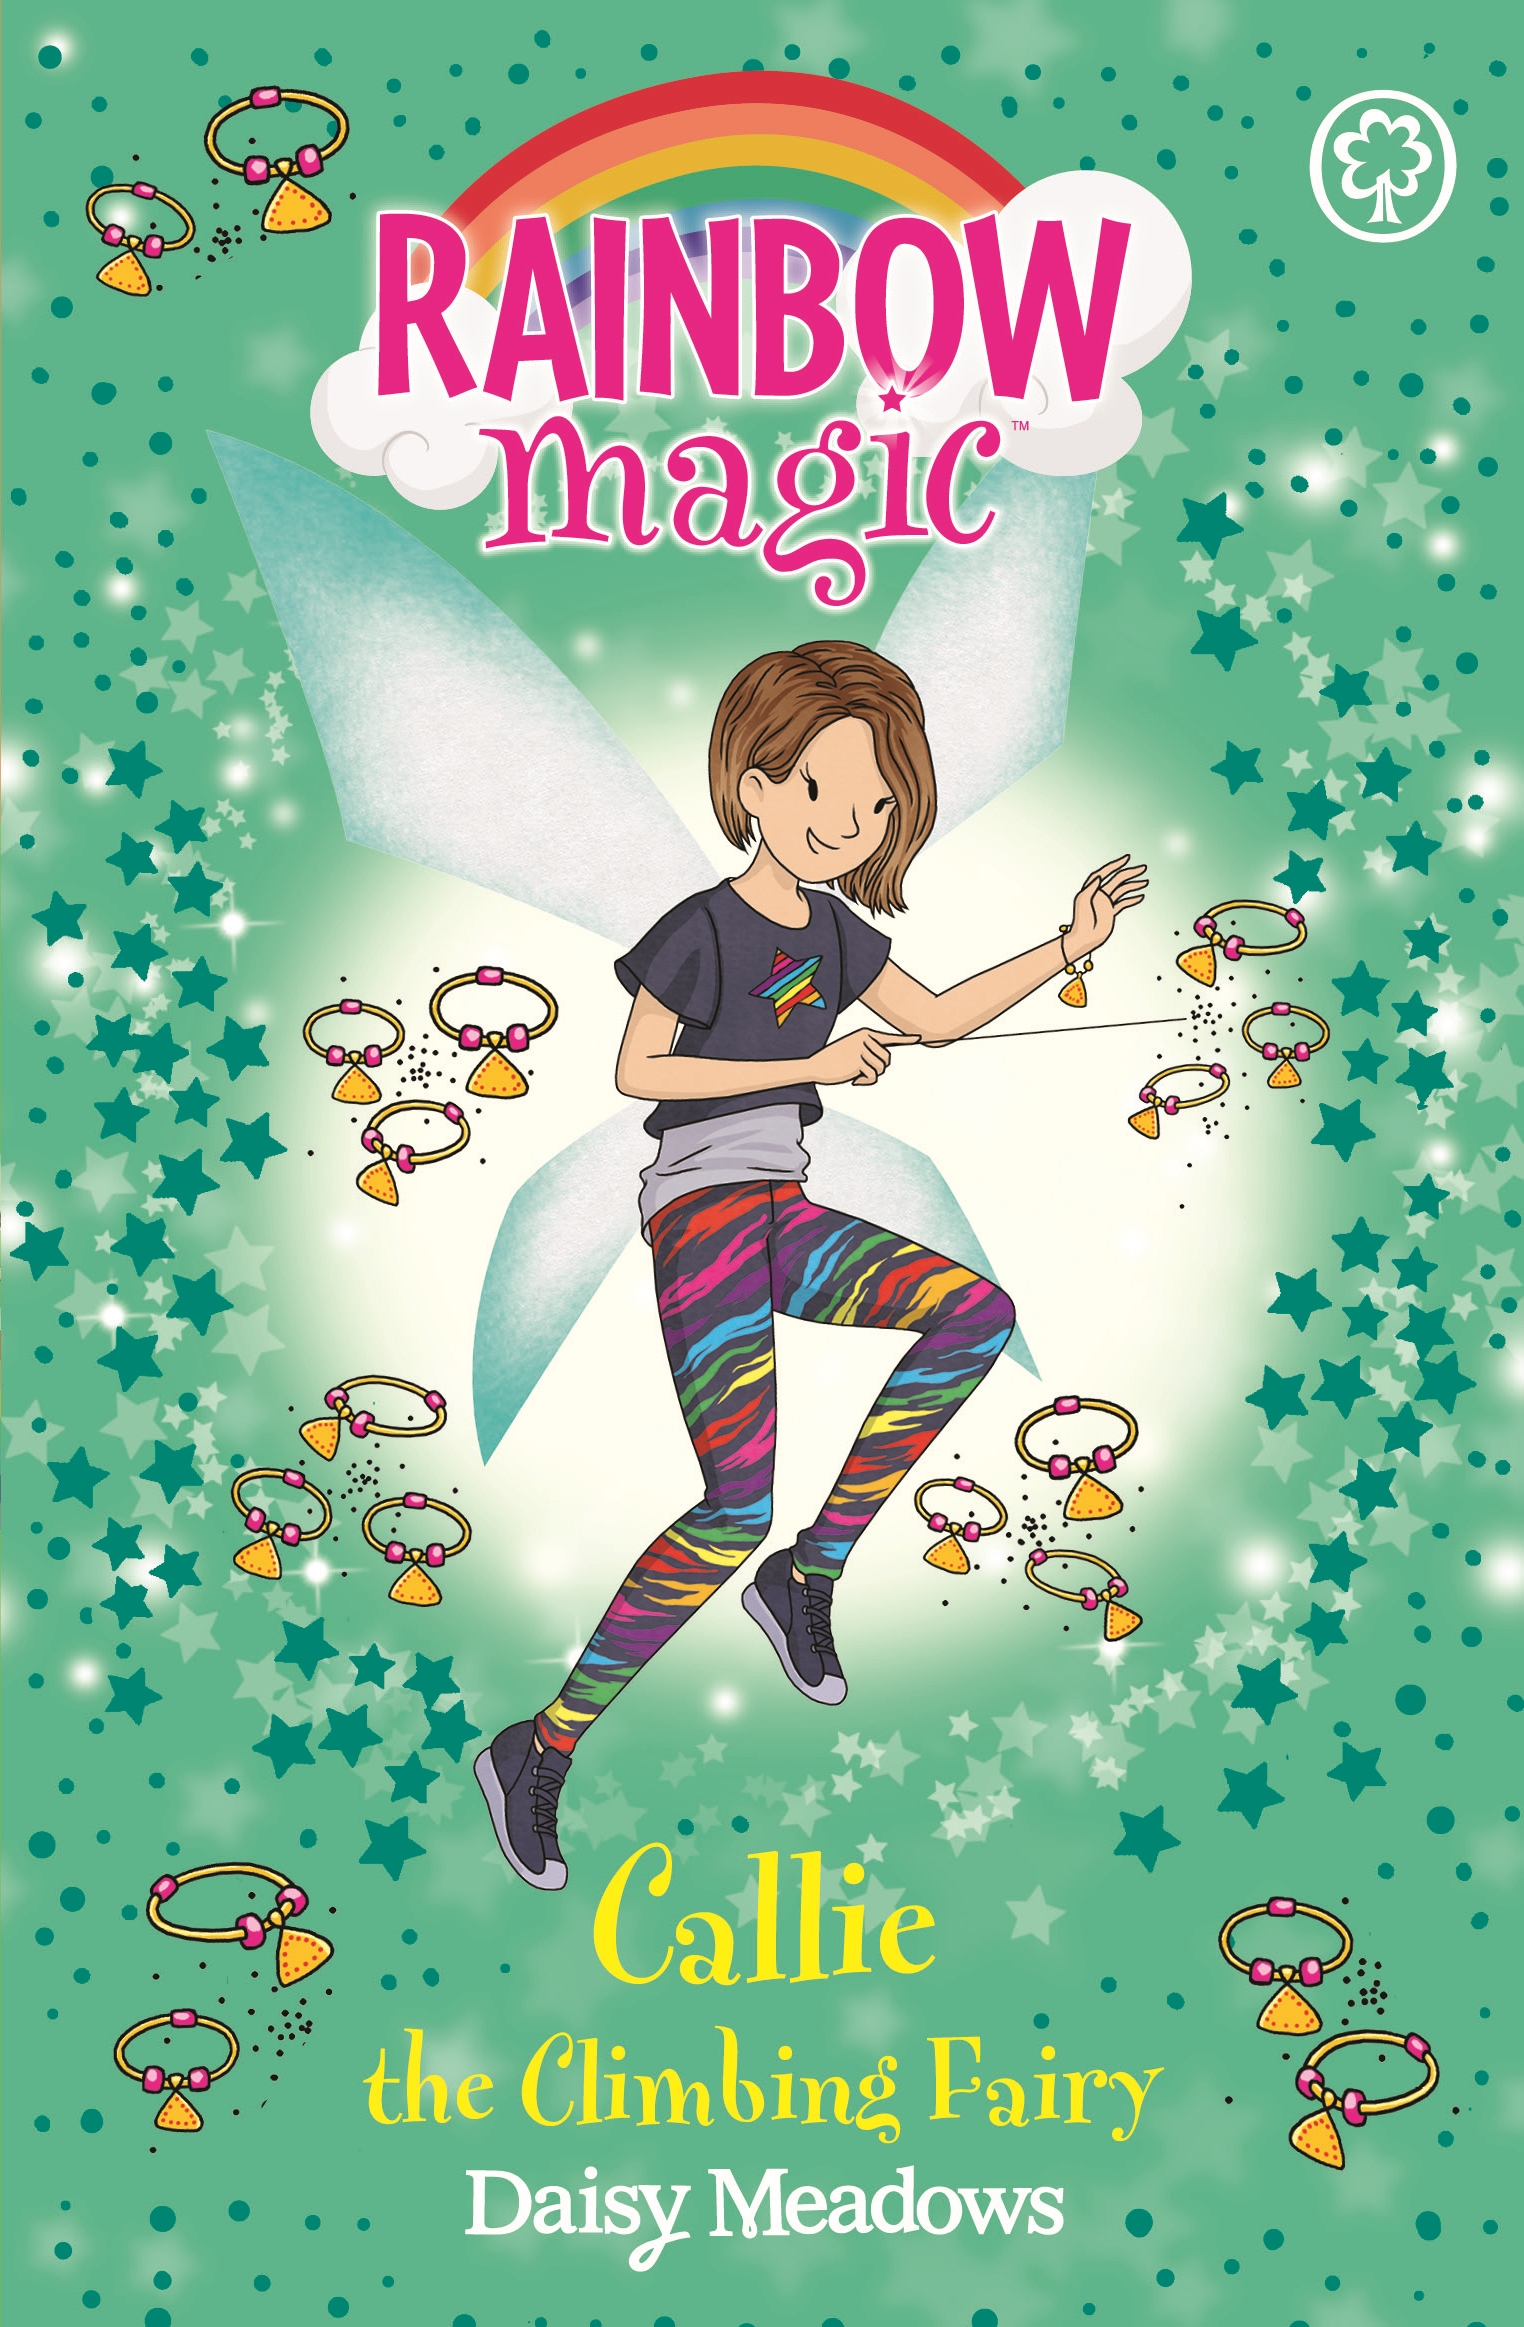 Rainbow Magic: Callie the Climbing Fairy by Daisy Meadows | Hachette ...